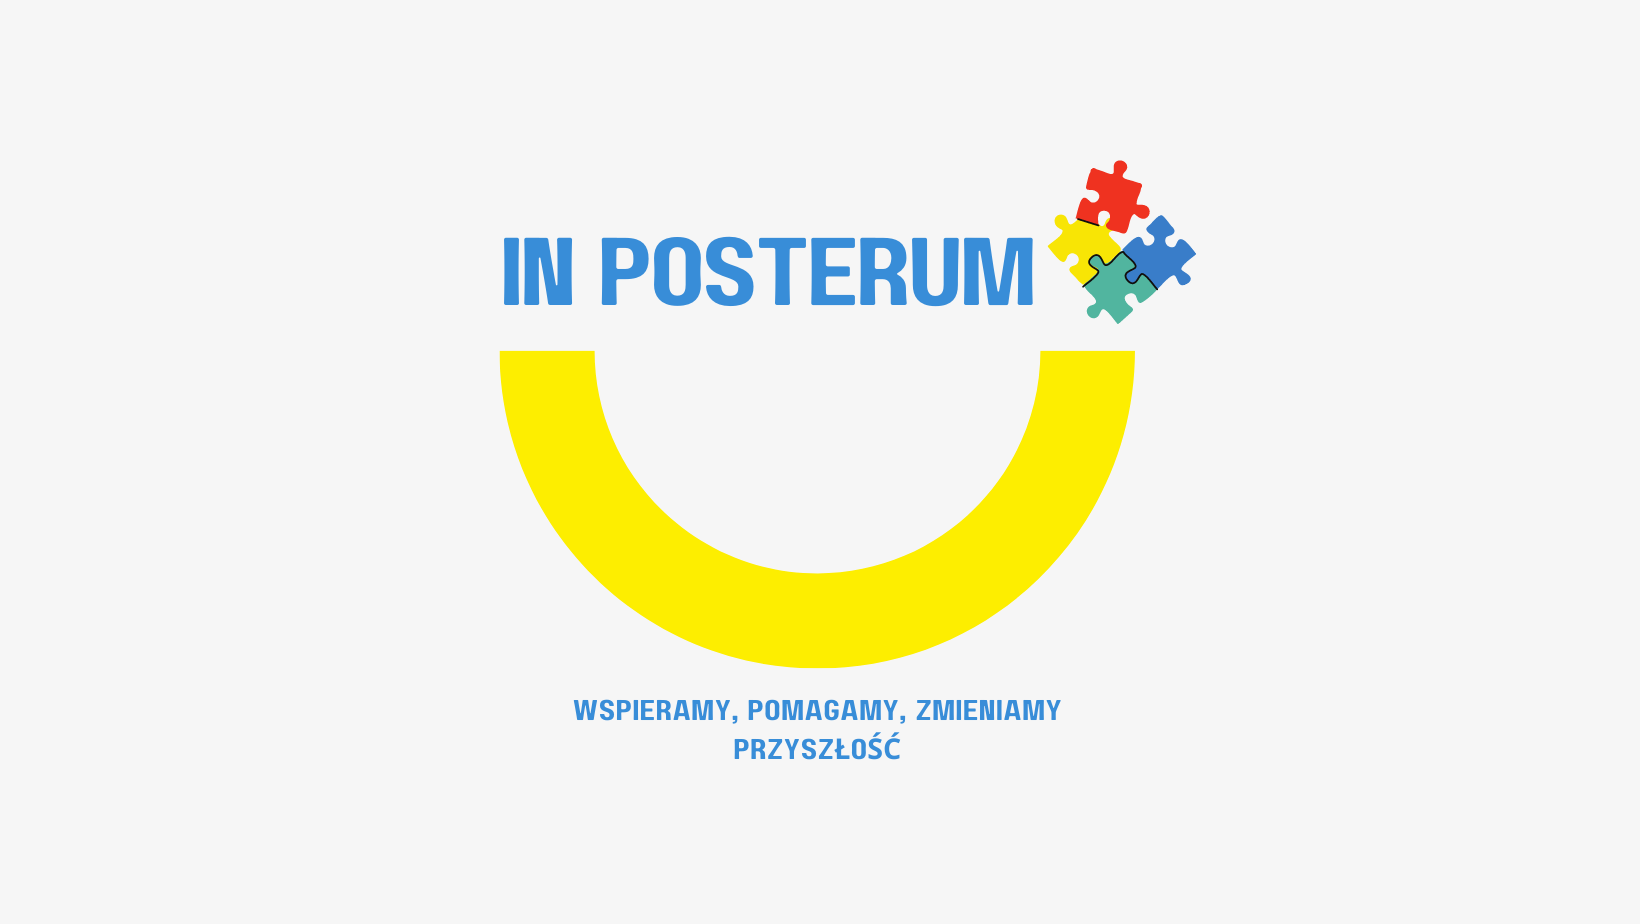 In Posterum Non - Profit